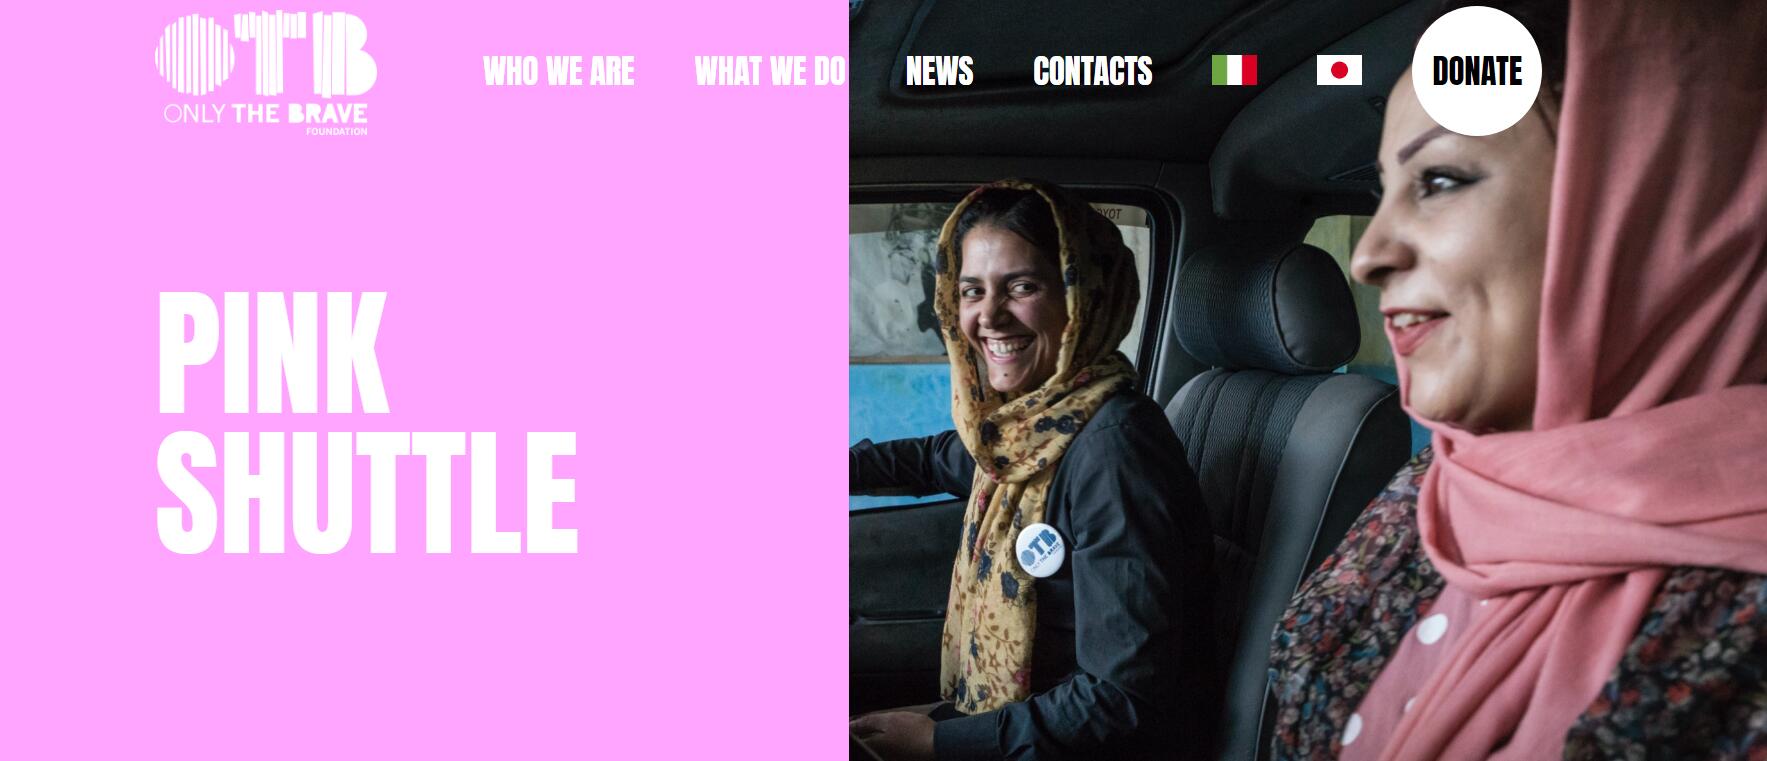 意大利OTB基金会参与营救阿富汗女性